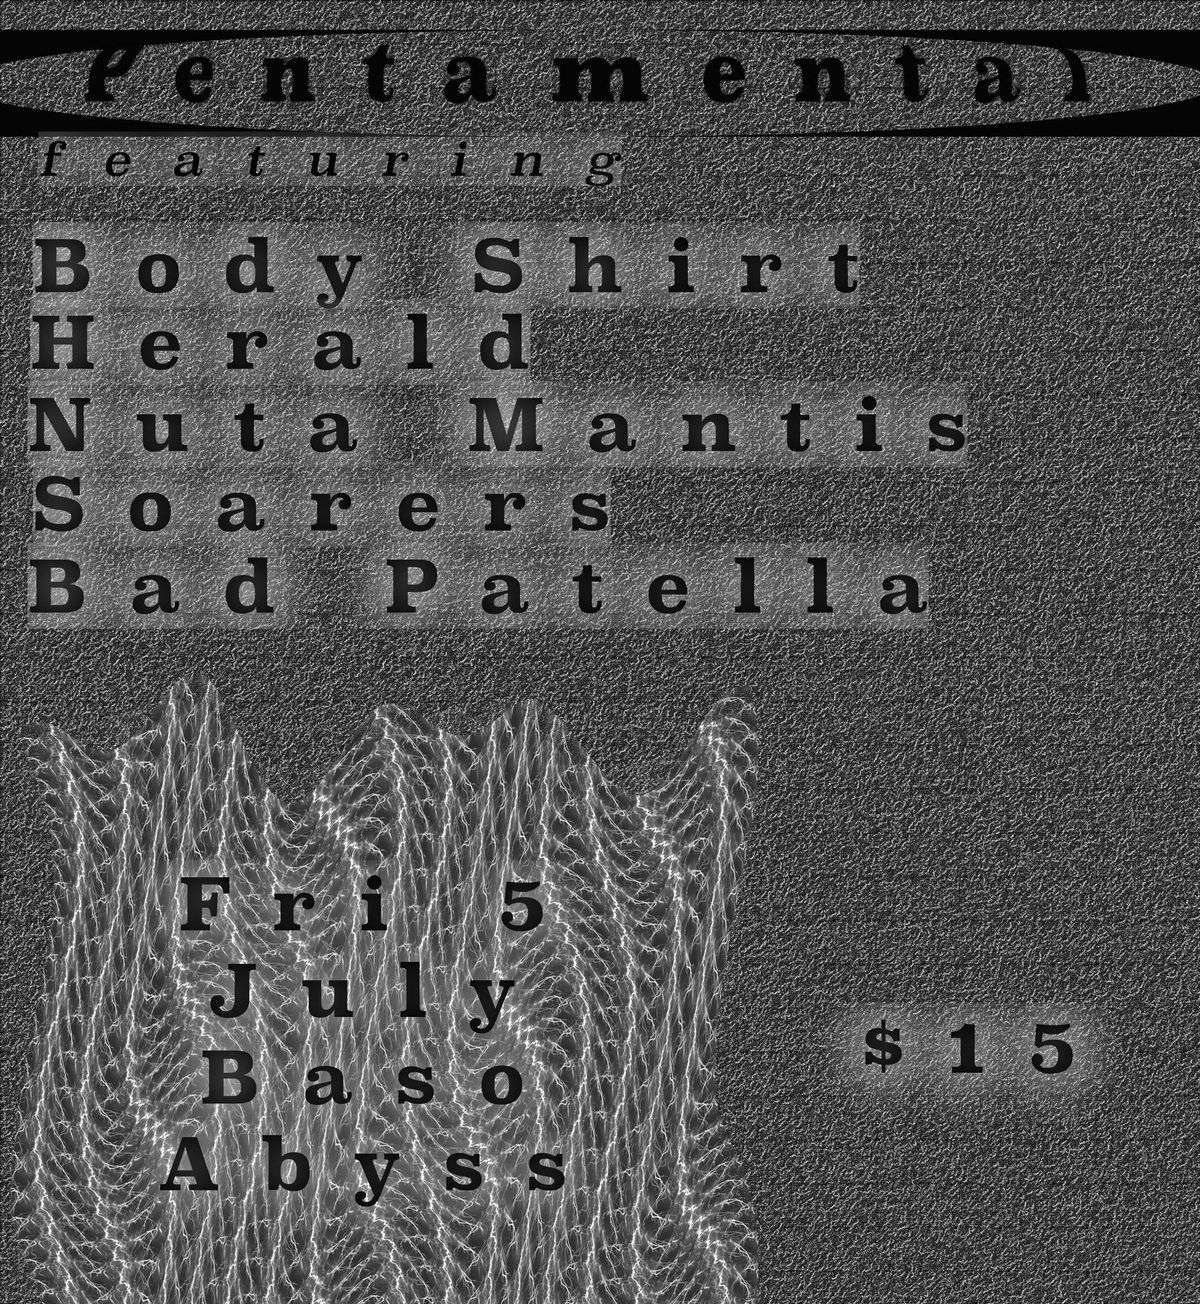 Pentamental! Body Shirt & Friends!